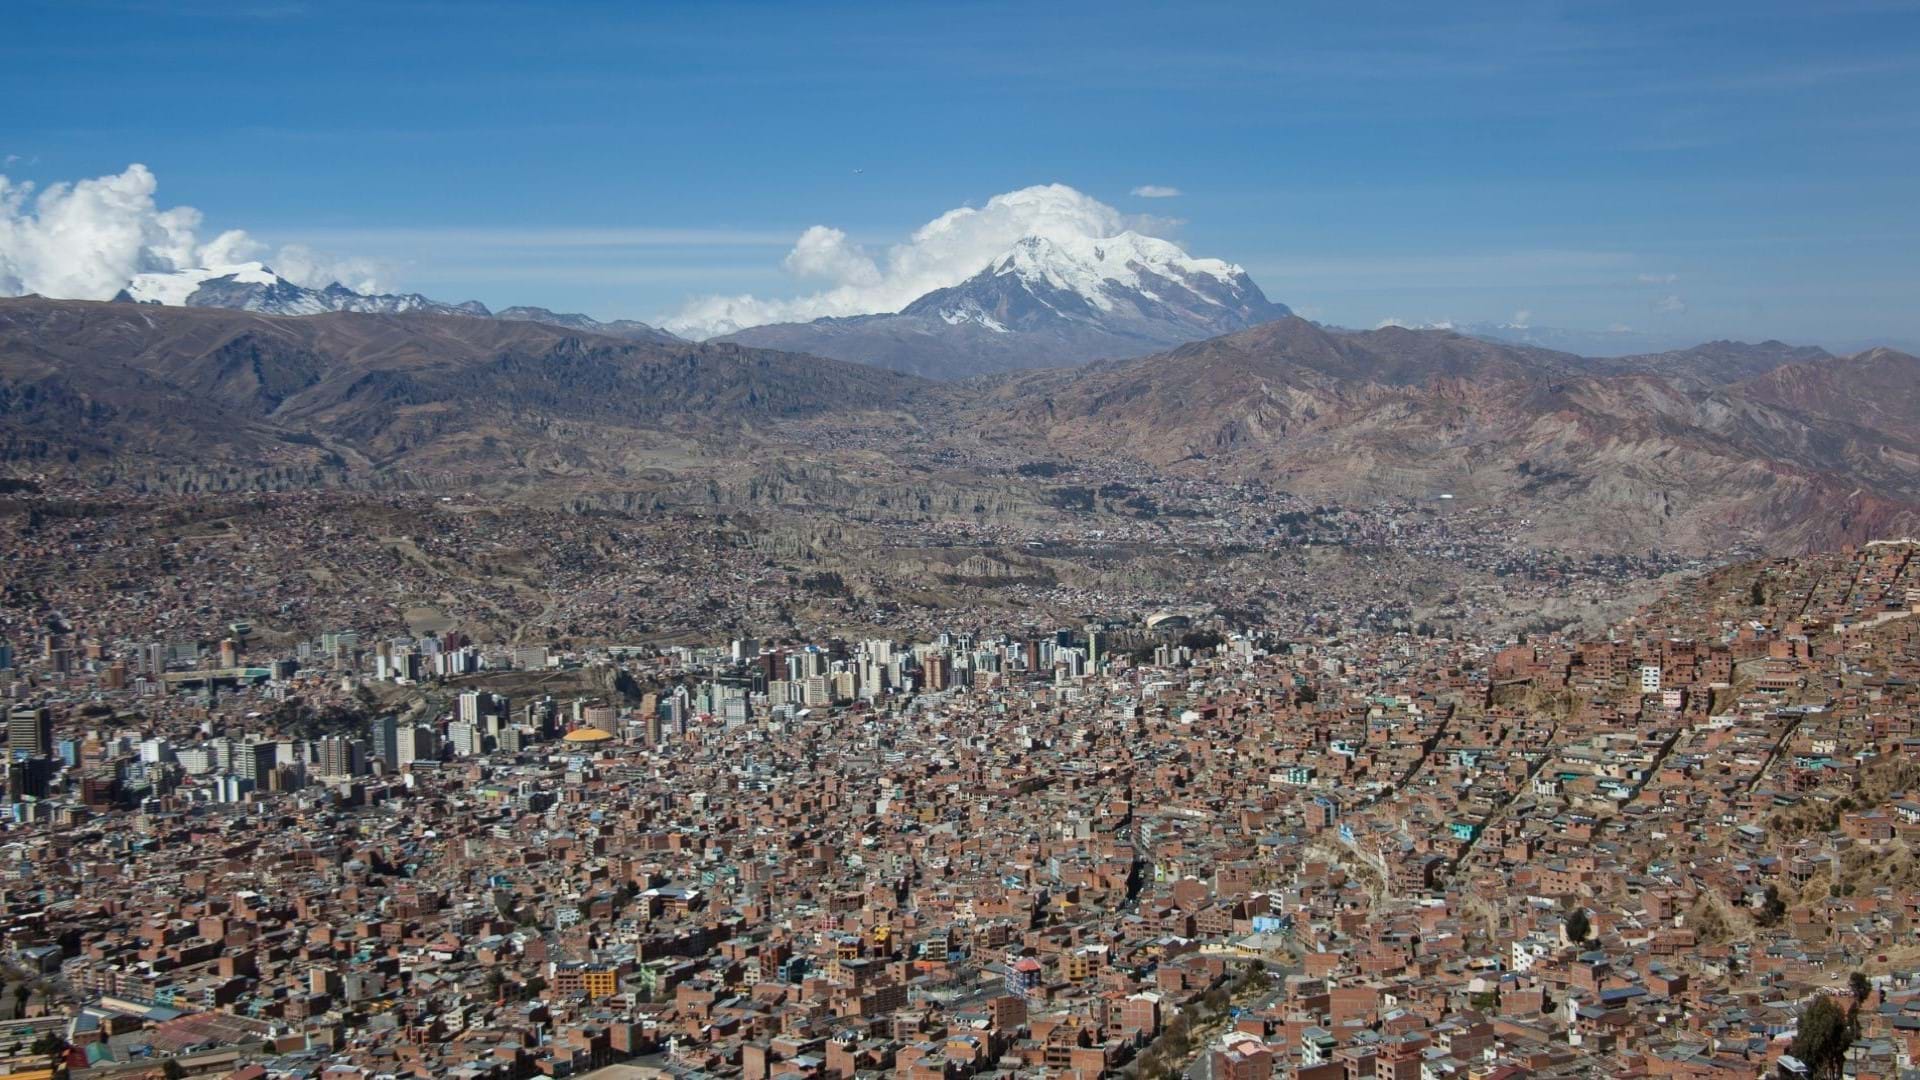 La Paz Bolivija, slikan iz vazduha, vrhovi planine Andi koje ga okružuju.